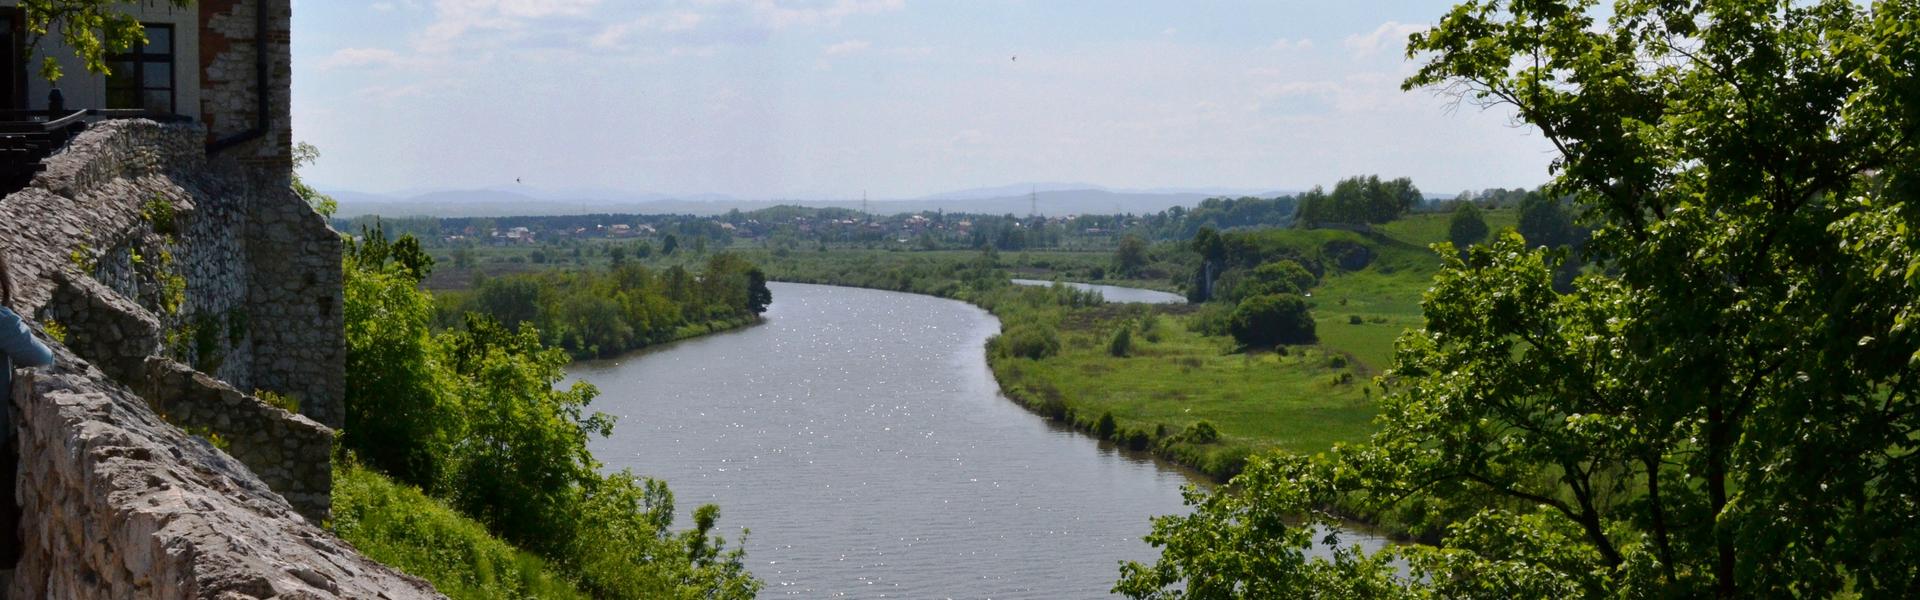 Der Fluss Weichsel, von einem Hügel her gesehen.